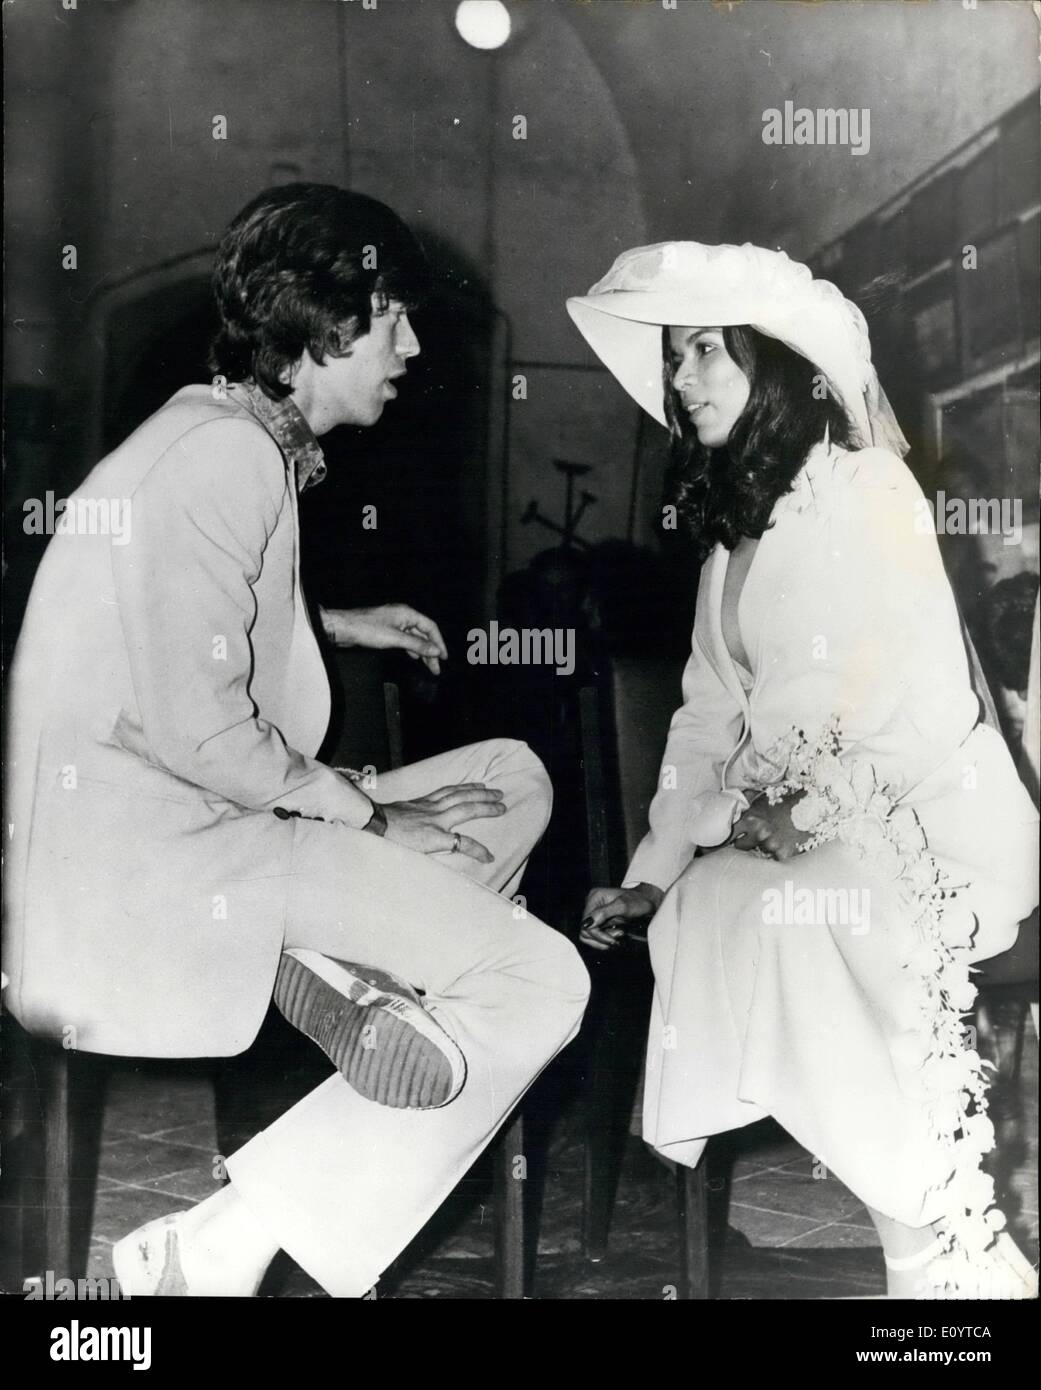 15 mai 1971 - 15 mai 1971 un tollé à Jagger's mariage à St Tropez. Mick Jagger des Rolling Stones a été marié plus tôt cette semaine dans le mariage les plus fous jamais vus dans la jet-set française balnéaire de St Tropez. Il y avait des combats, des malédictions et des larmes avant de Jagger, 27 ans, et son épouse nicaraguayenne, Bianca Perez Morena de Macias, 21 ans, homme et femme ont été prononcées au cours d'une cérémonie civile à la mairie, suivie d'une seconde cérémonie à la chapelle du xviie siècle de la Sainte Anne. Ici aussi, était le chaos Banque D'Images